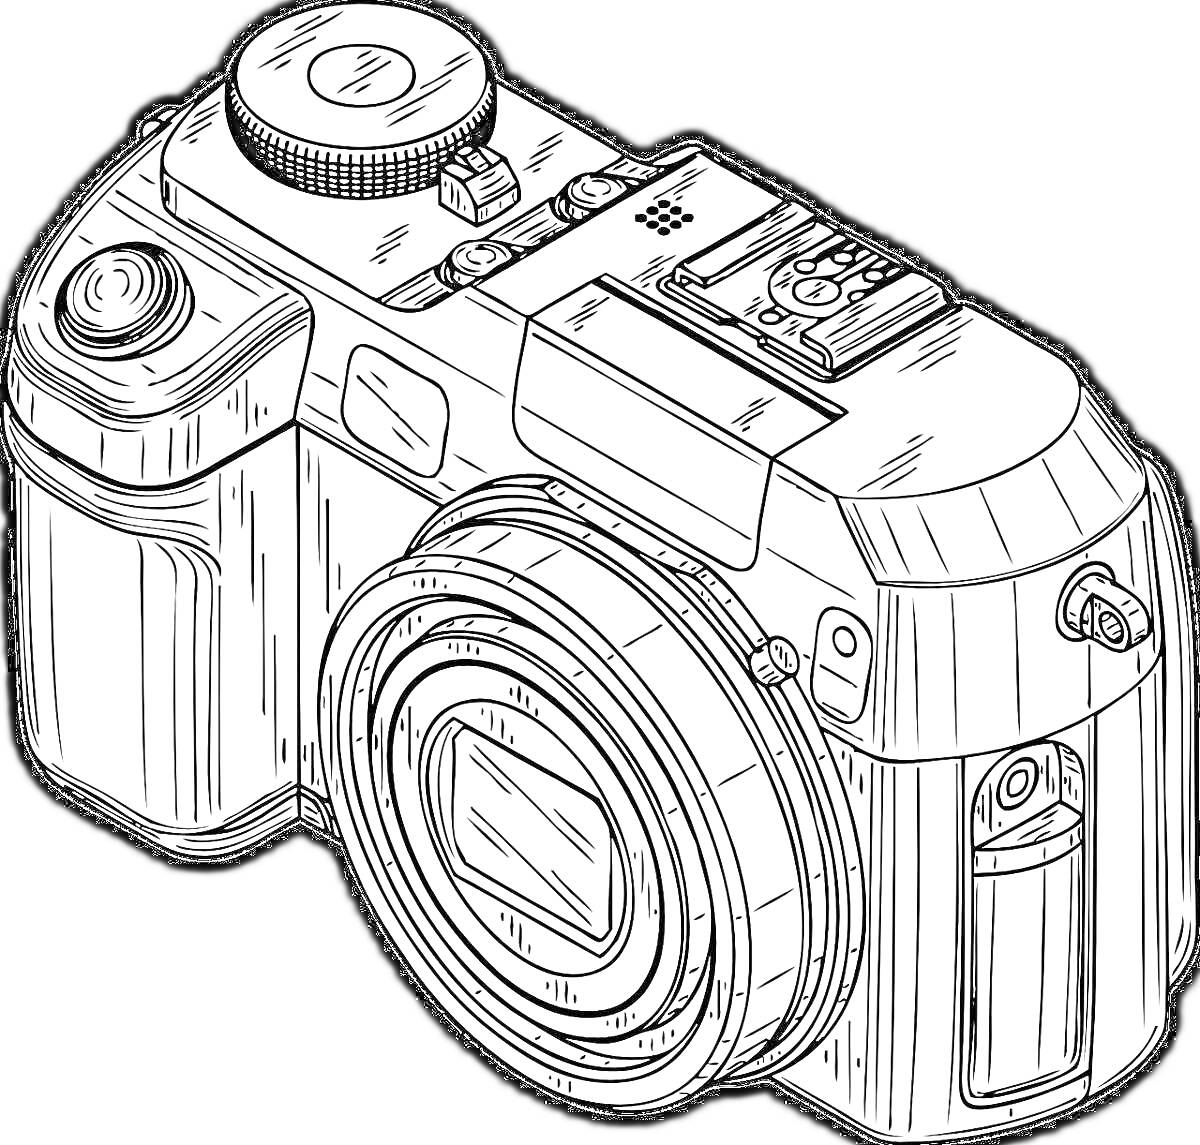 Раскраска Фотоаппарат с объективом и элементами управления (кнопки, диск, крепление для вспышки)